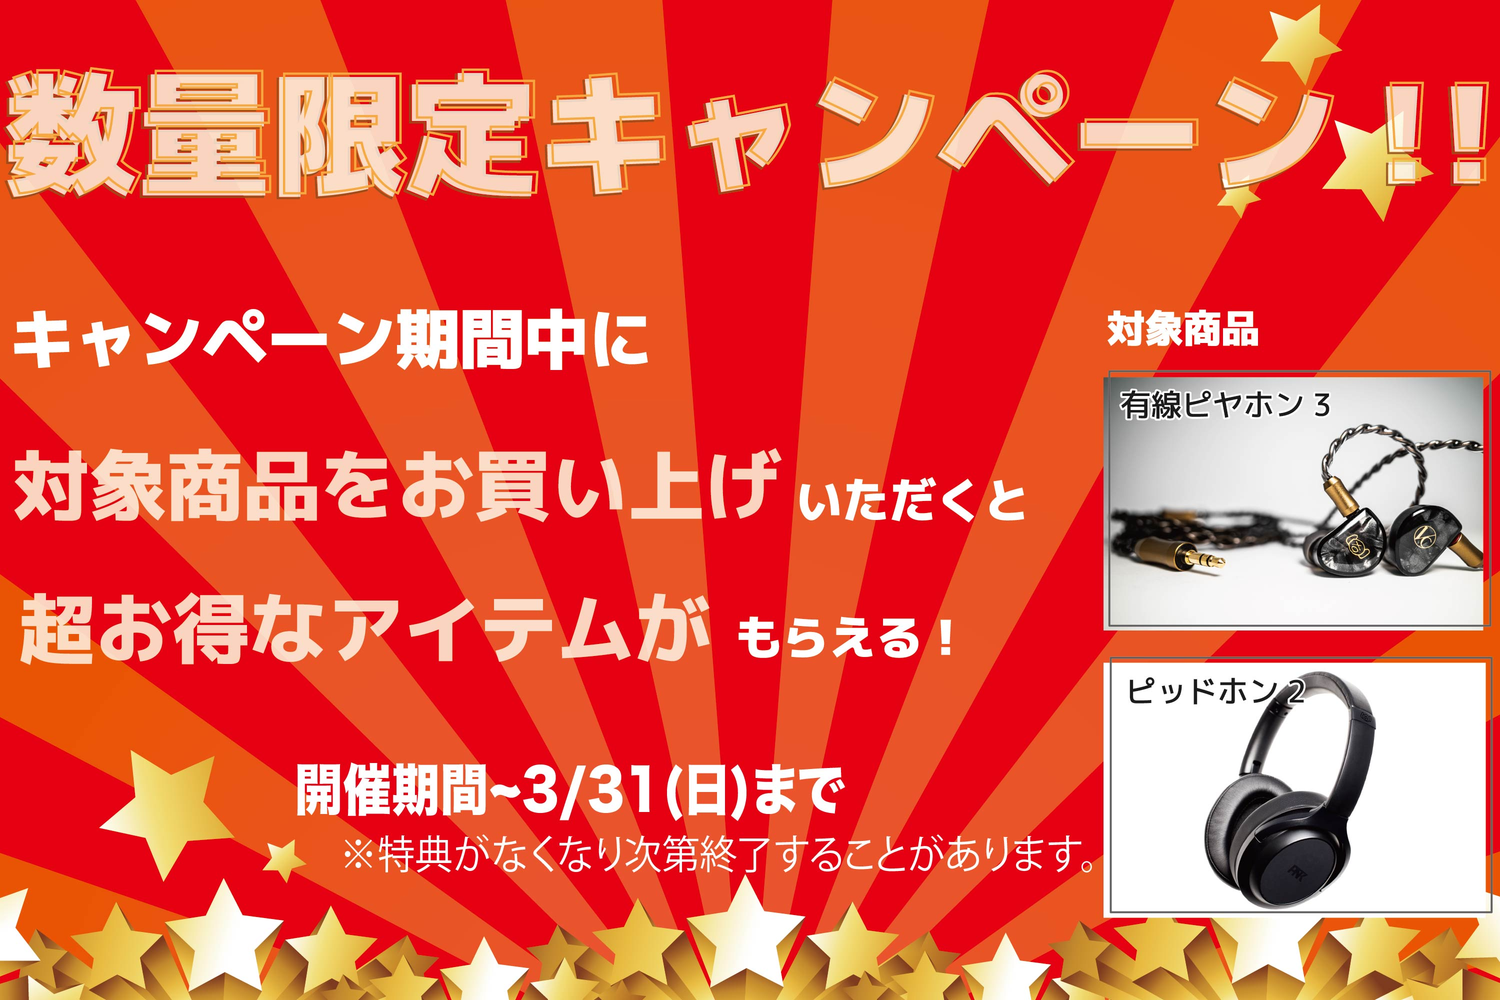 【期間限定キャンペーン】有線ピヤホン3(1.8m版)購入で選べる!ケーブル1本プレゼント!!